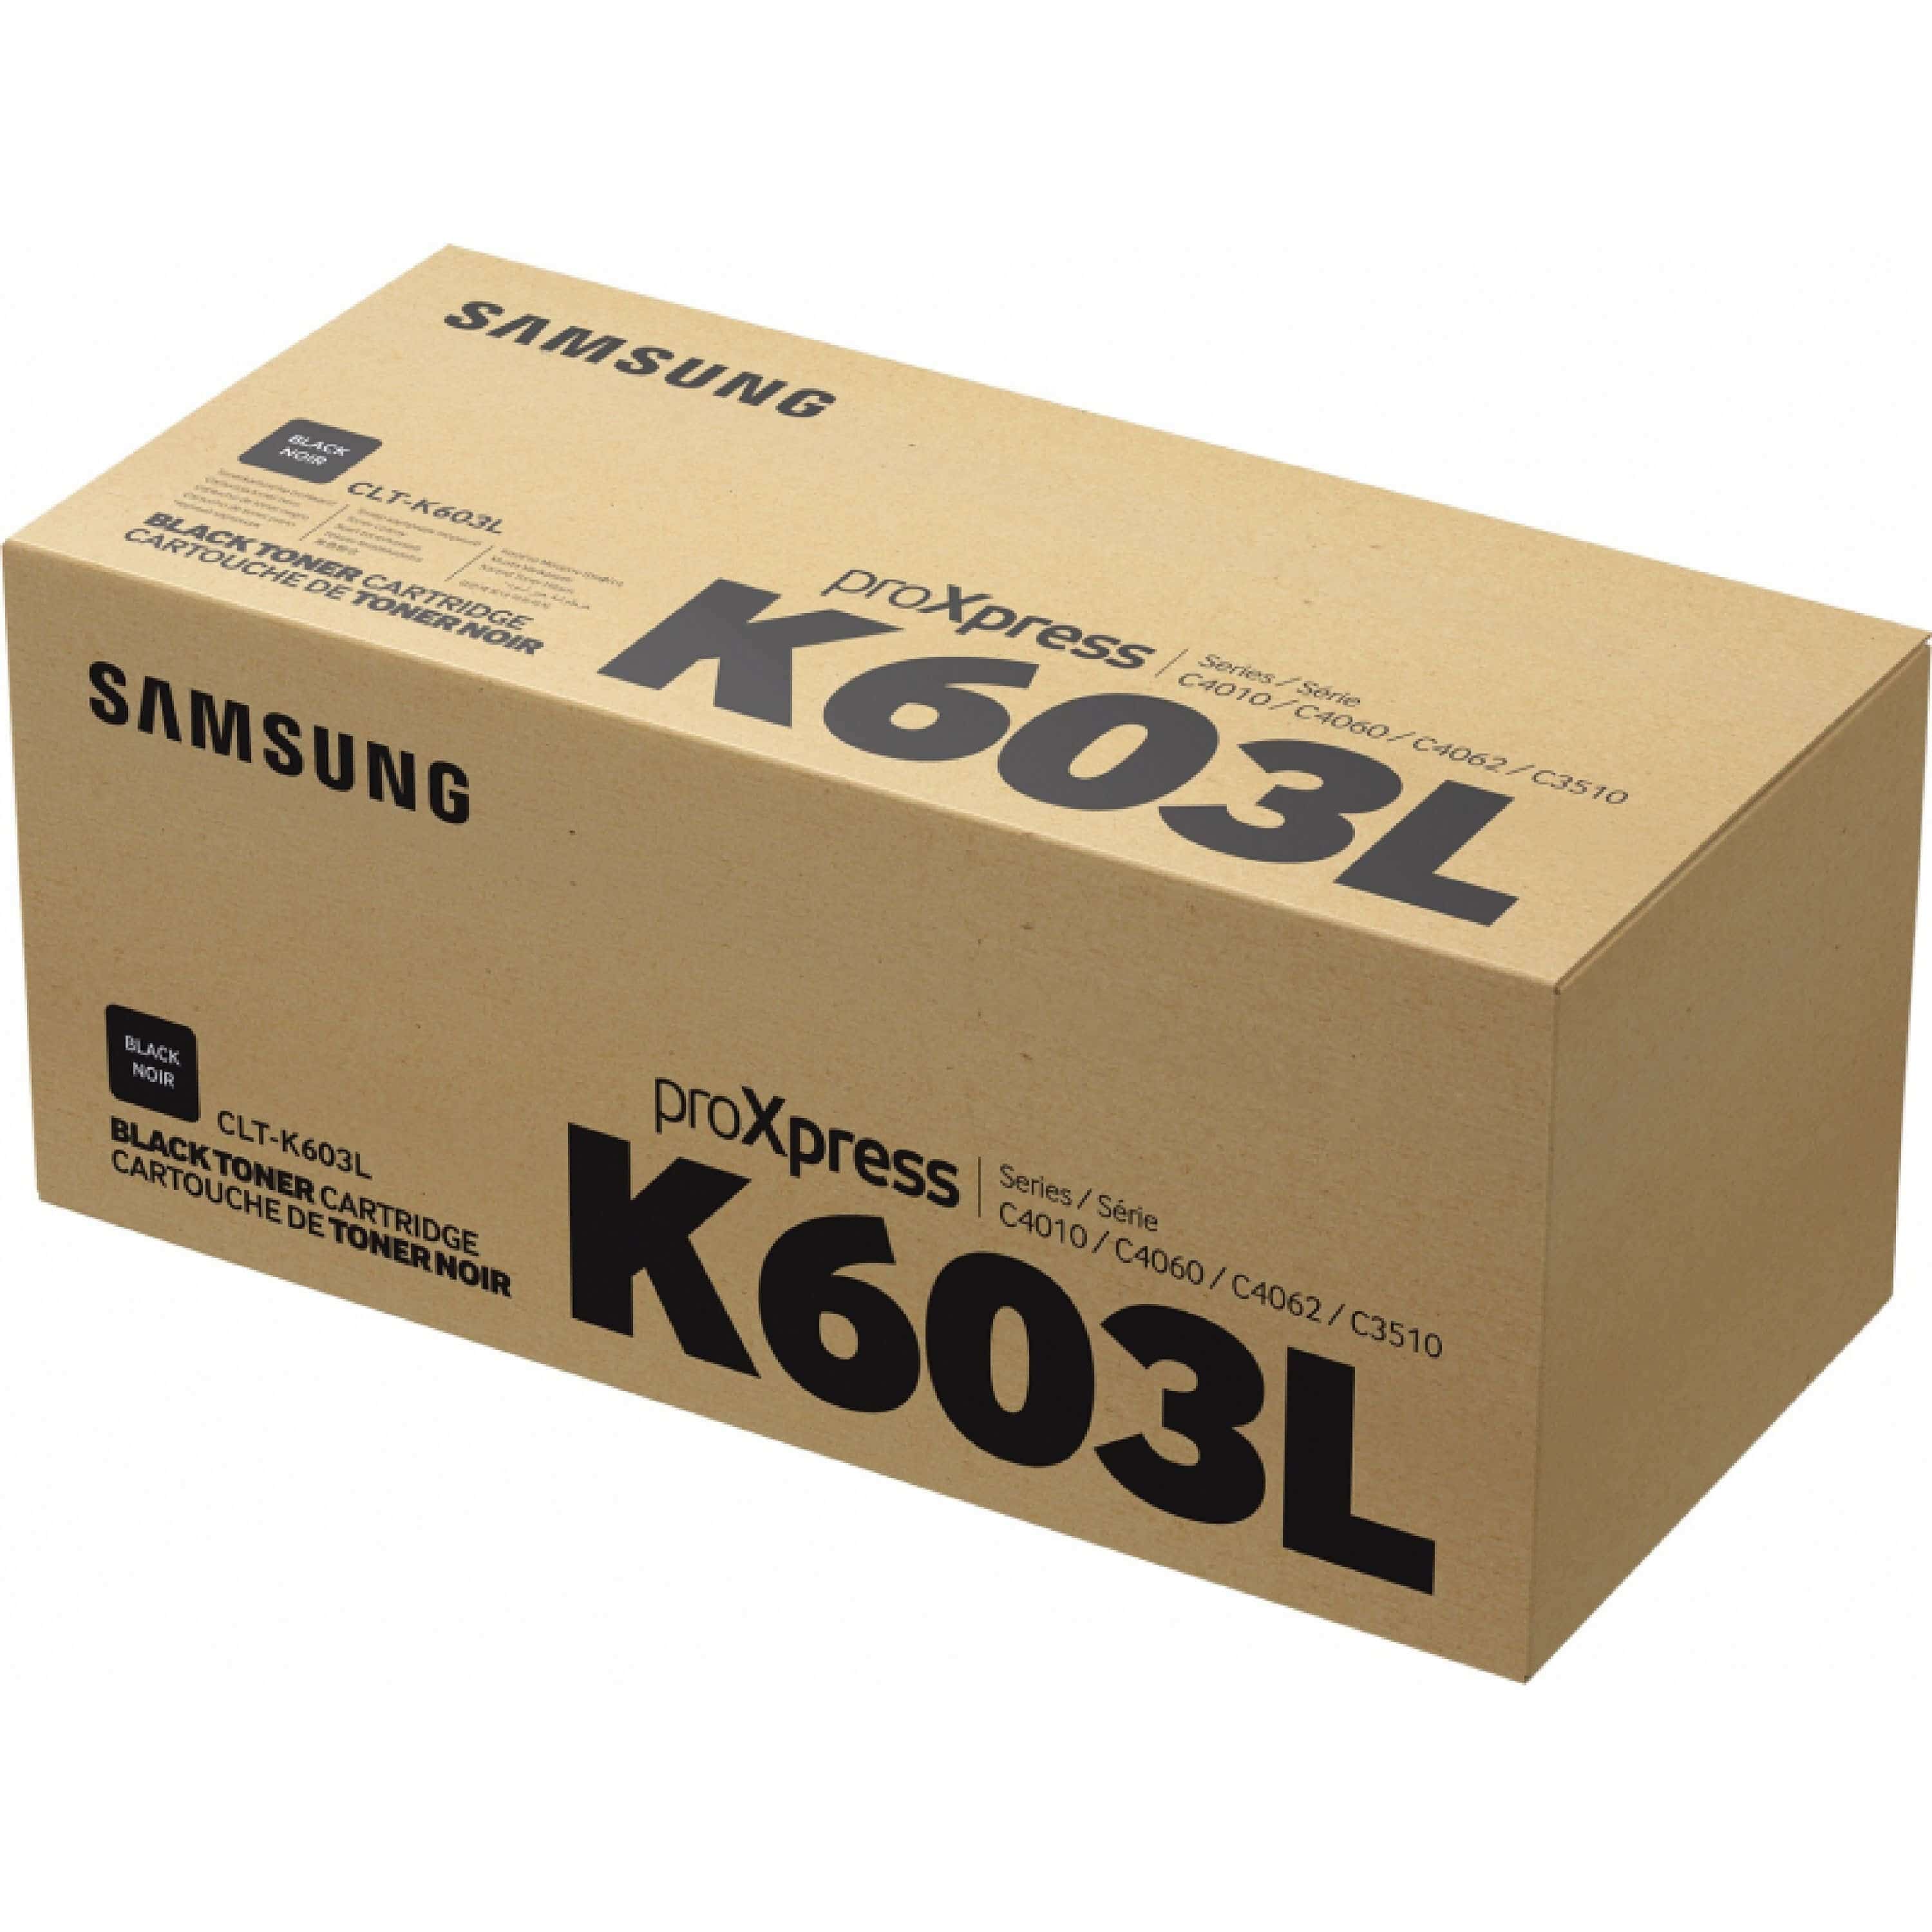 Original Toner Samsung ProXpress C 4010 ND (SU214A / CLT-K603L)